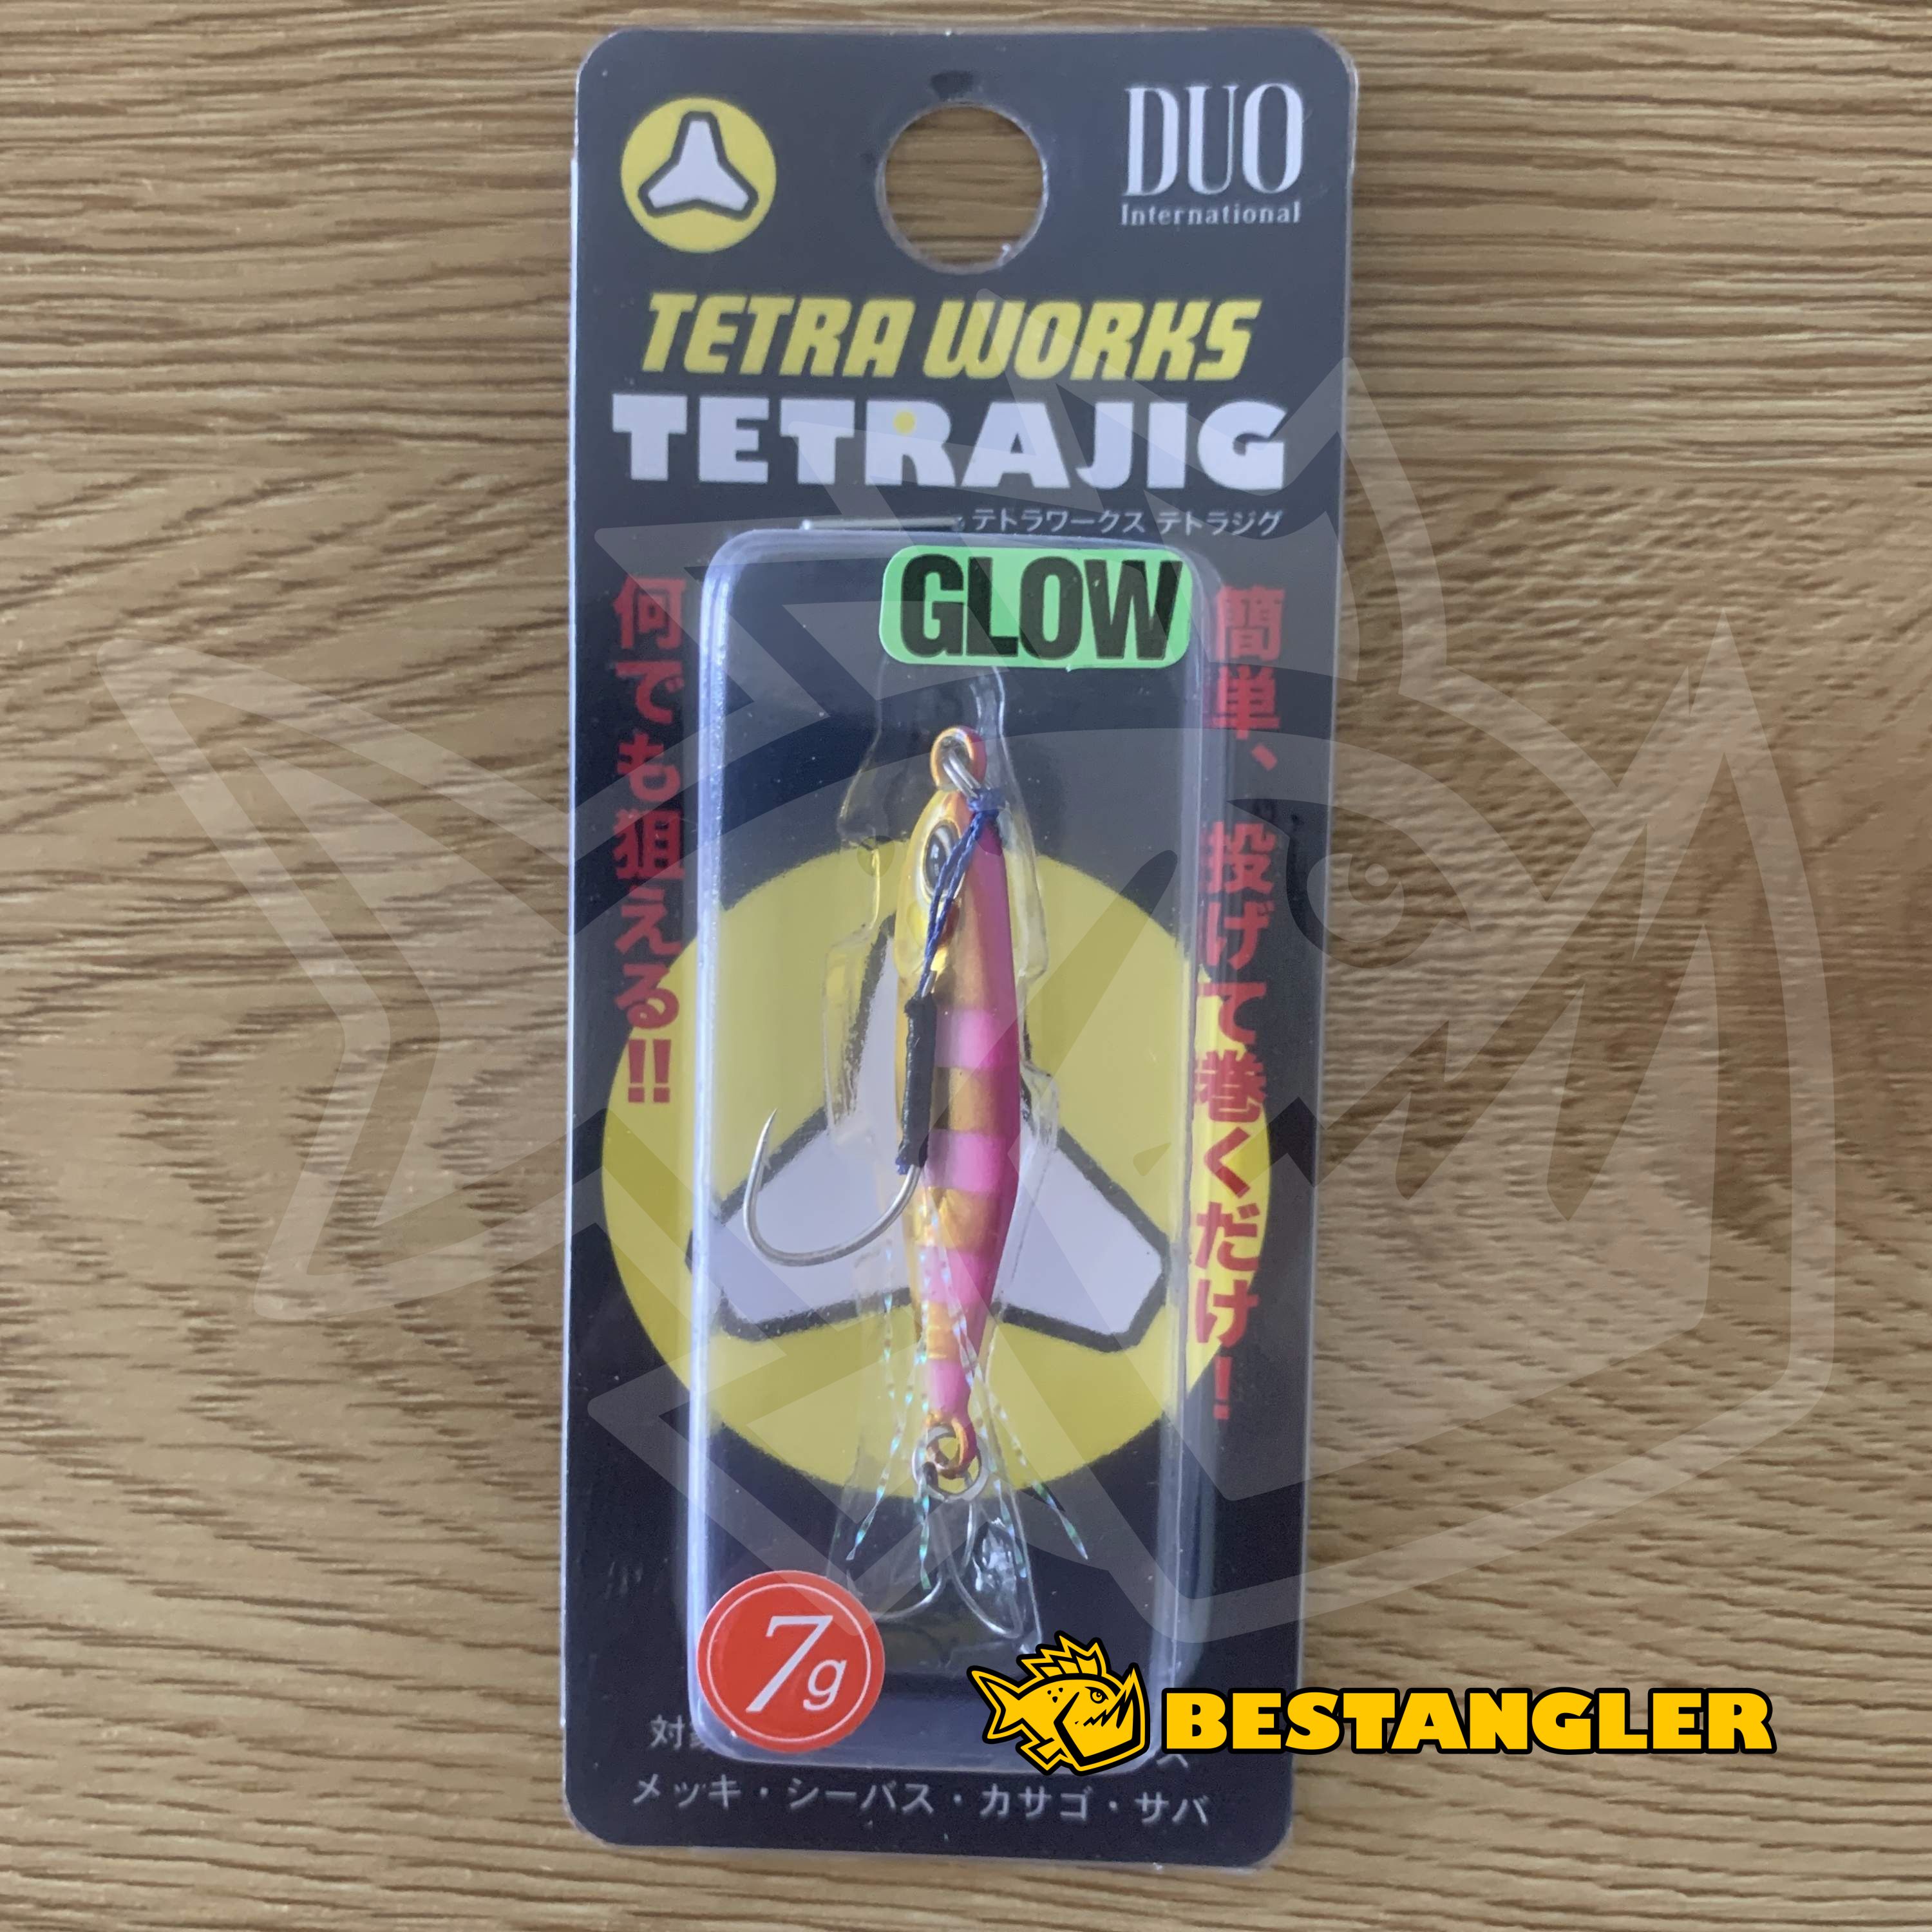 Tetra Works - Tetra Micro Jigs 10g / Zebra Glow (PJA0101)